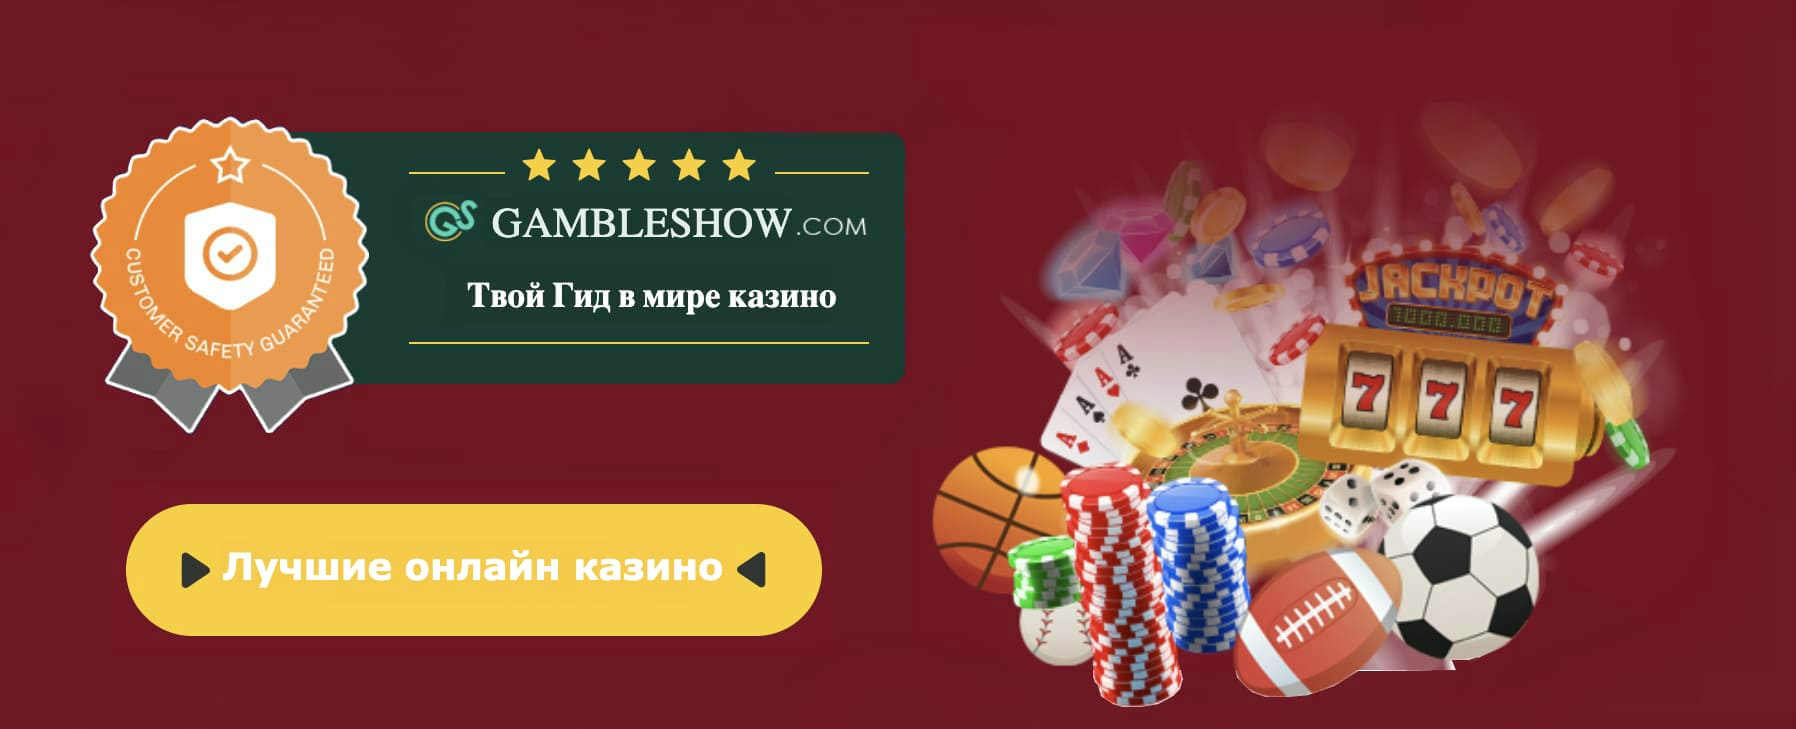 Melhor casino bitcoin online em linha